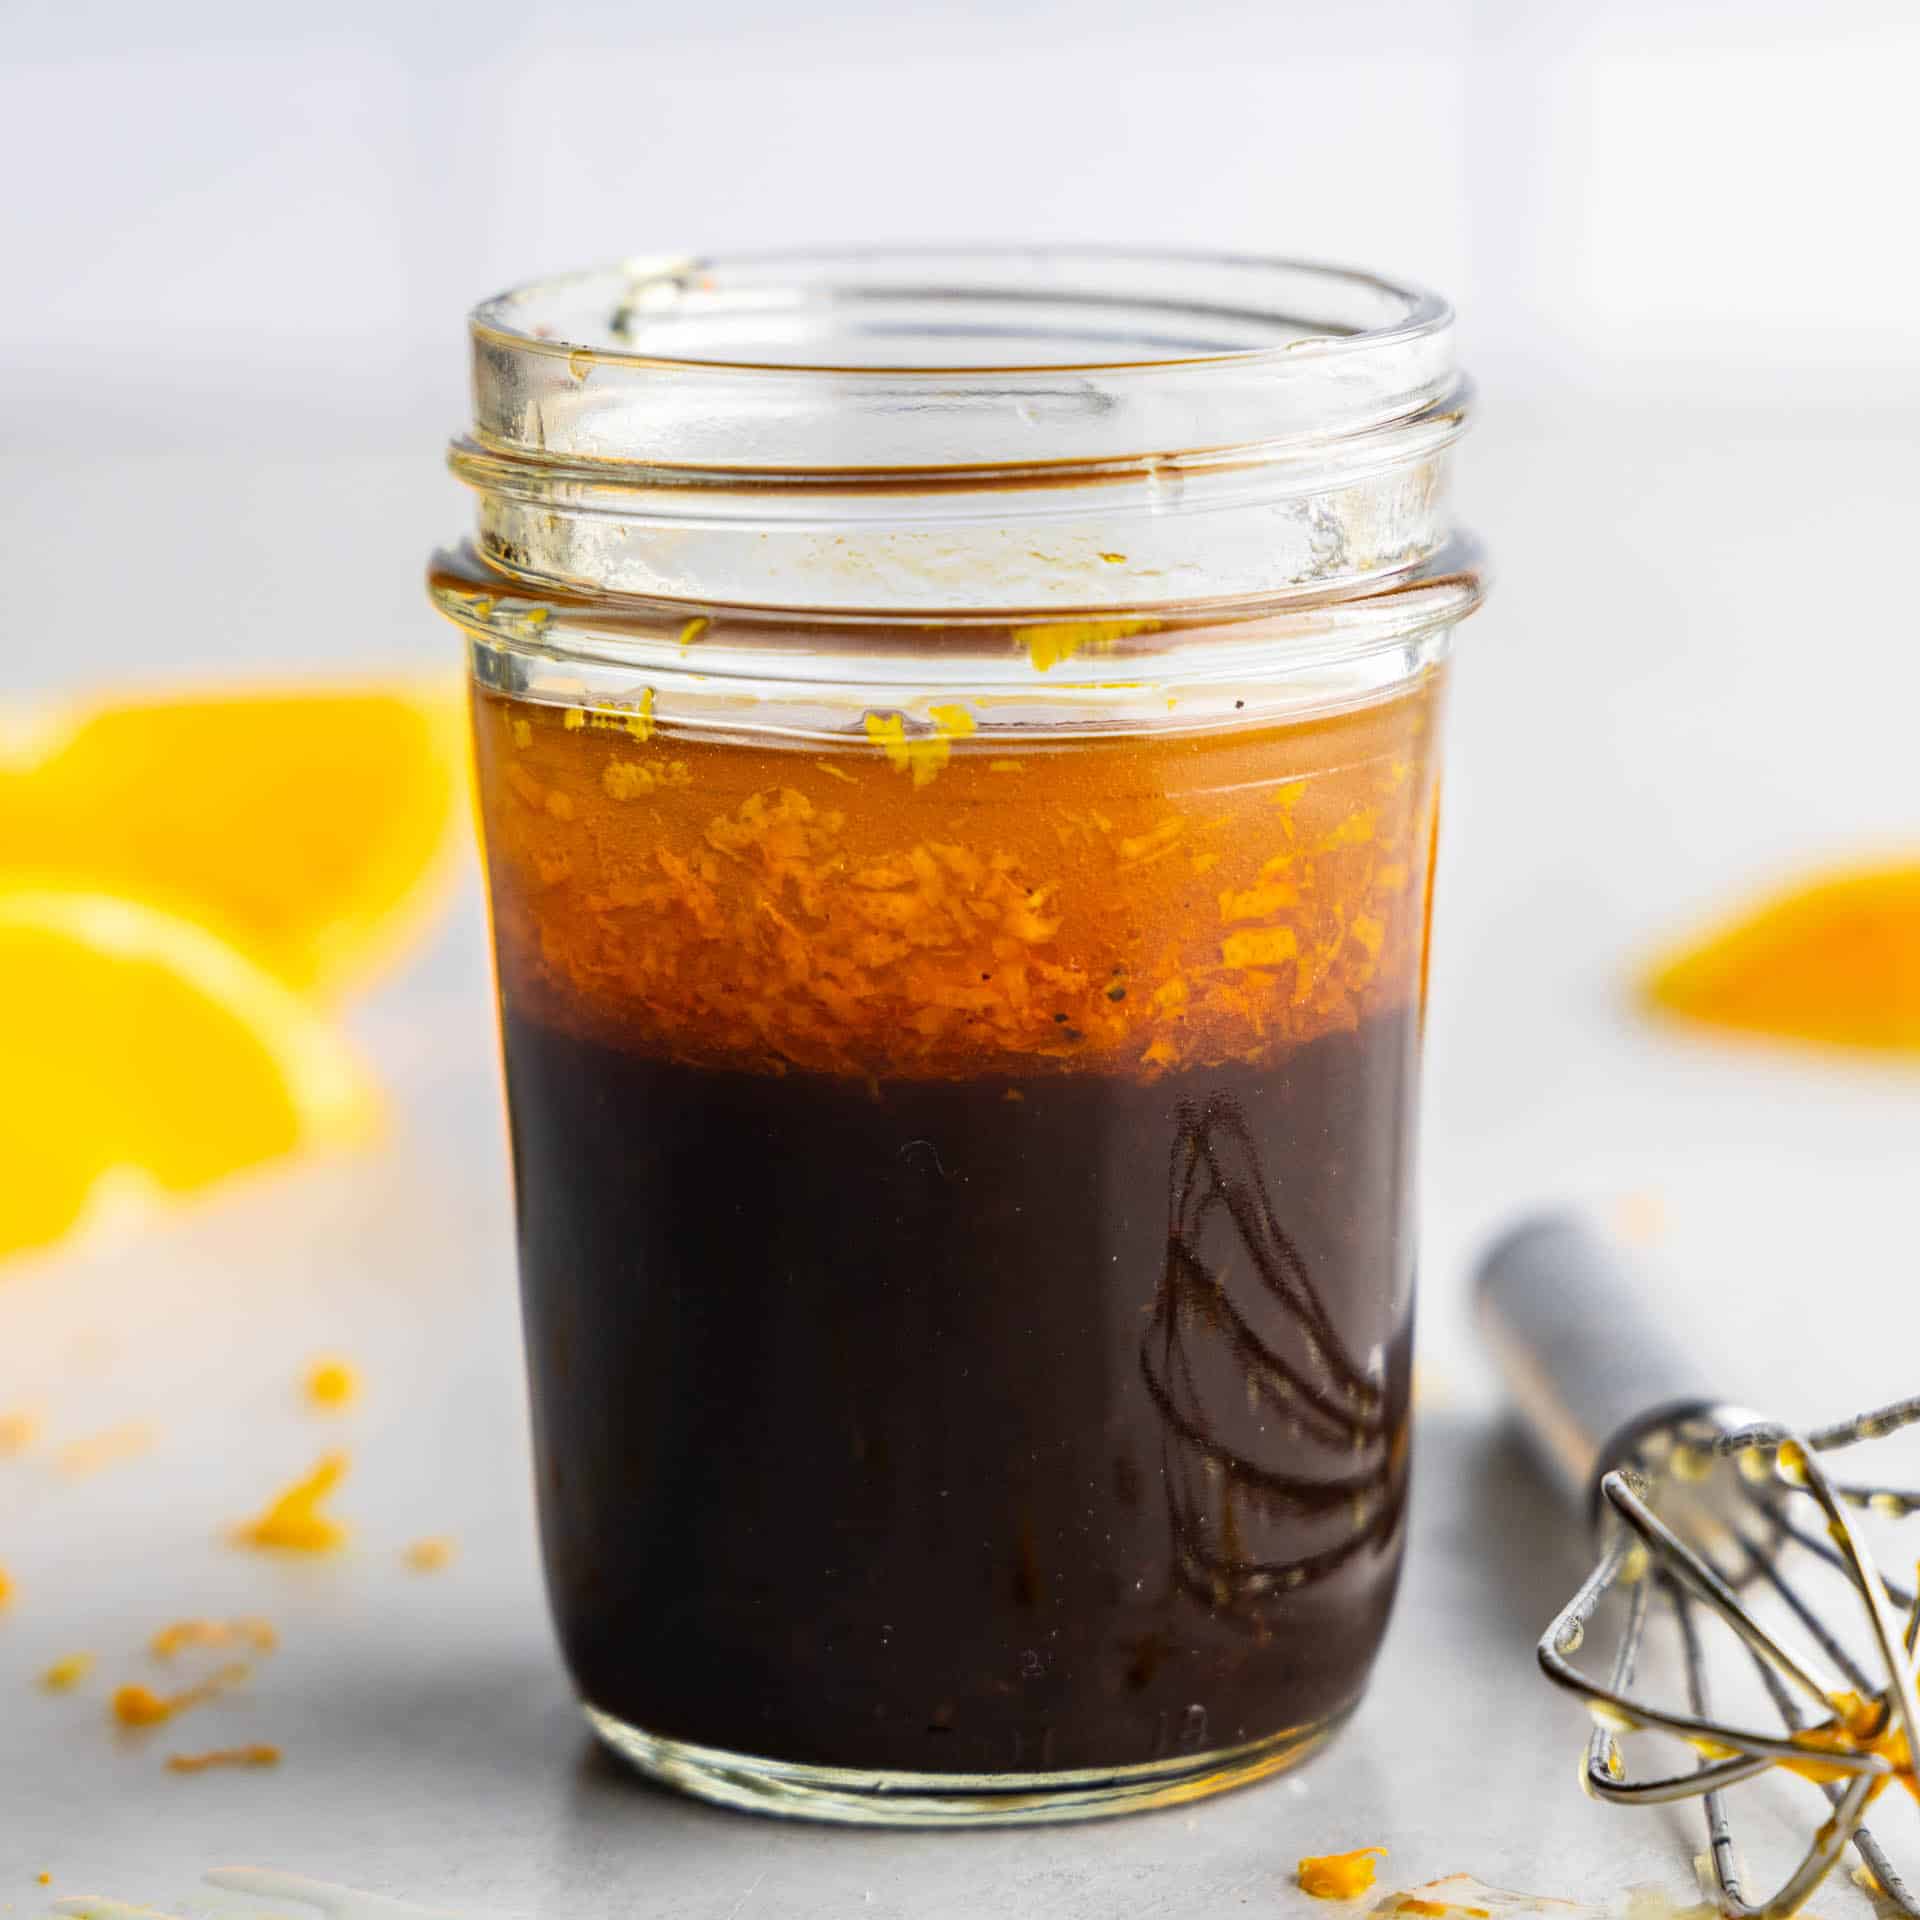 A jar of homemade orange balsamic vinaigrette.